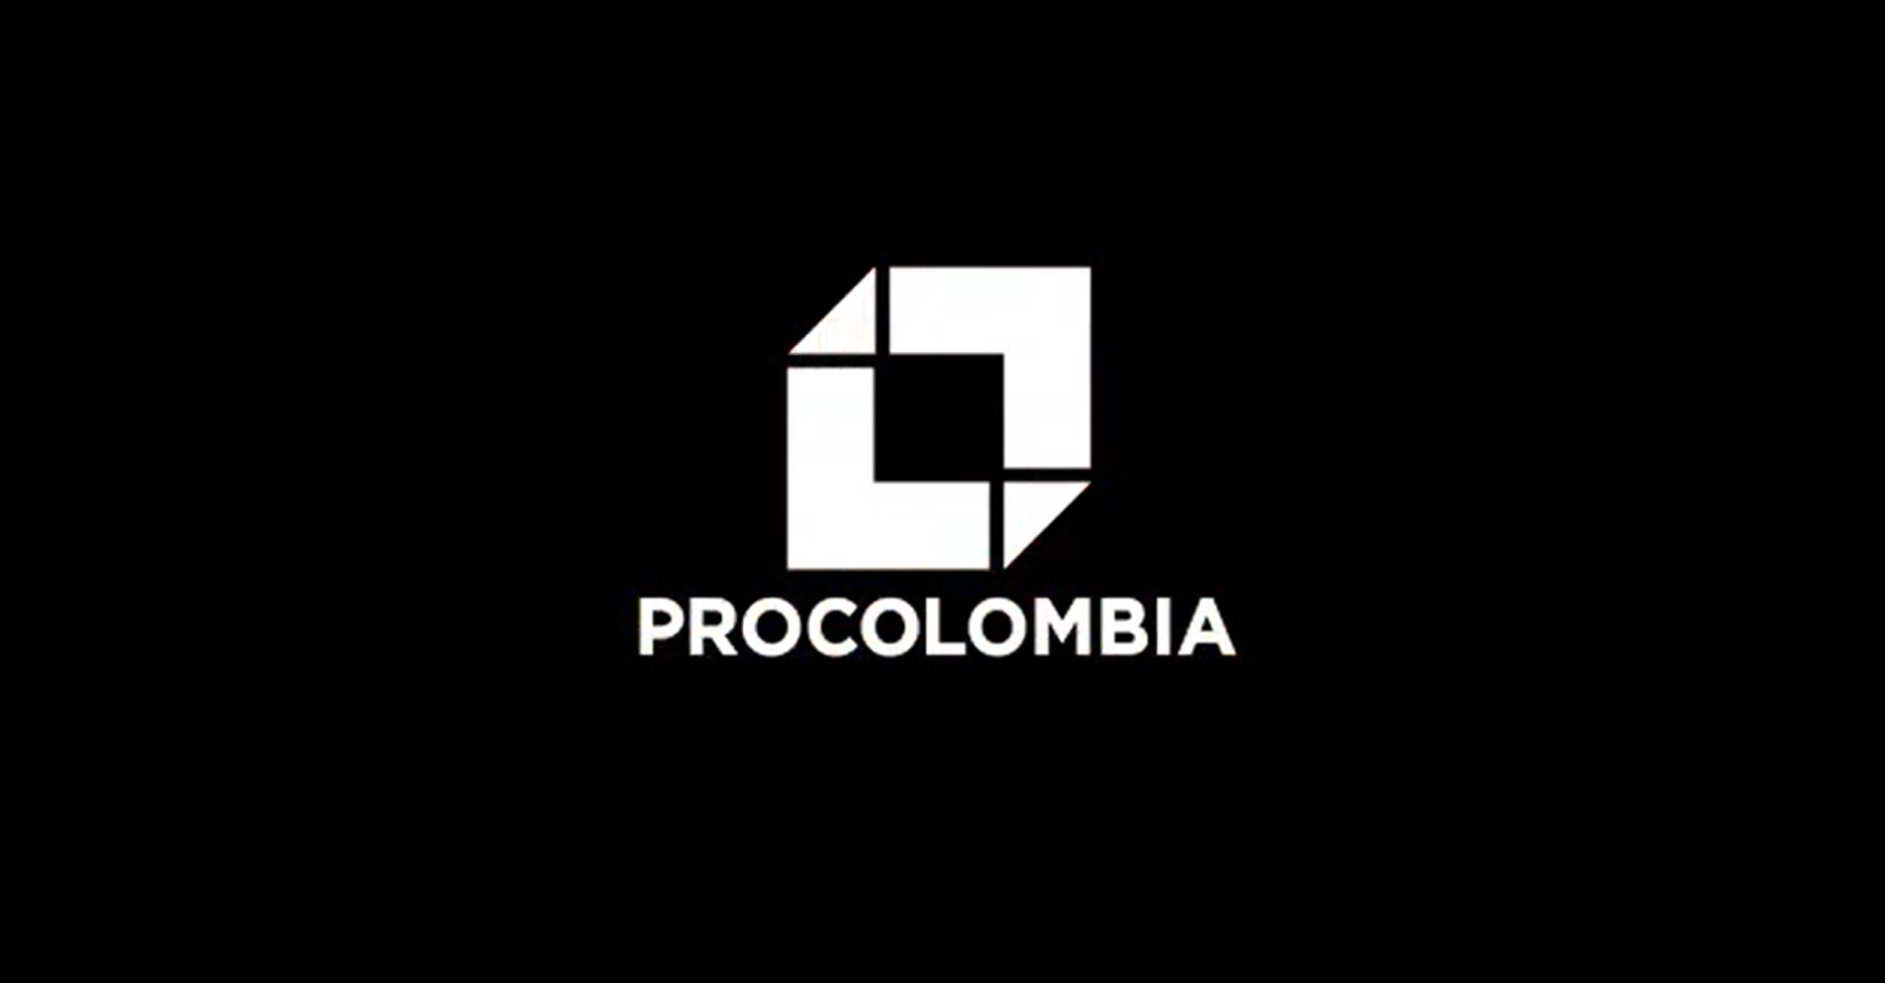 Productos colombianos protagonistas en los Juegos Olímpicos 2020